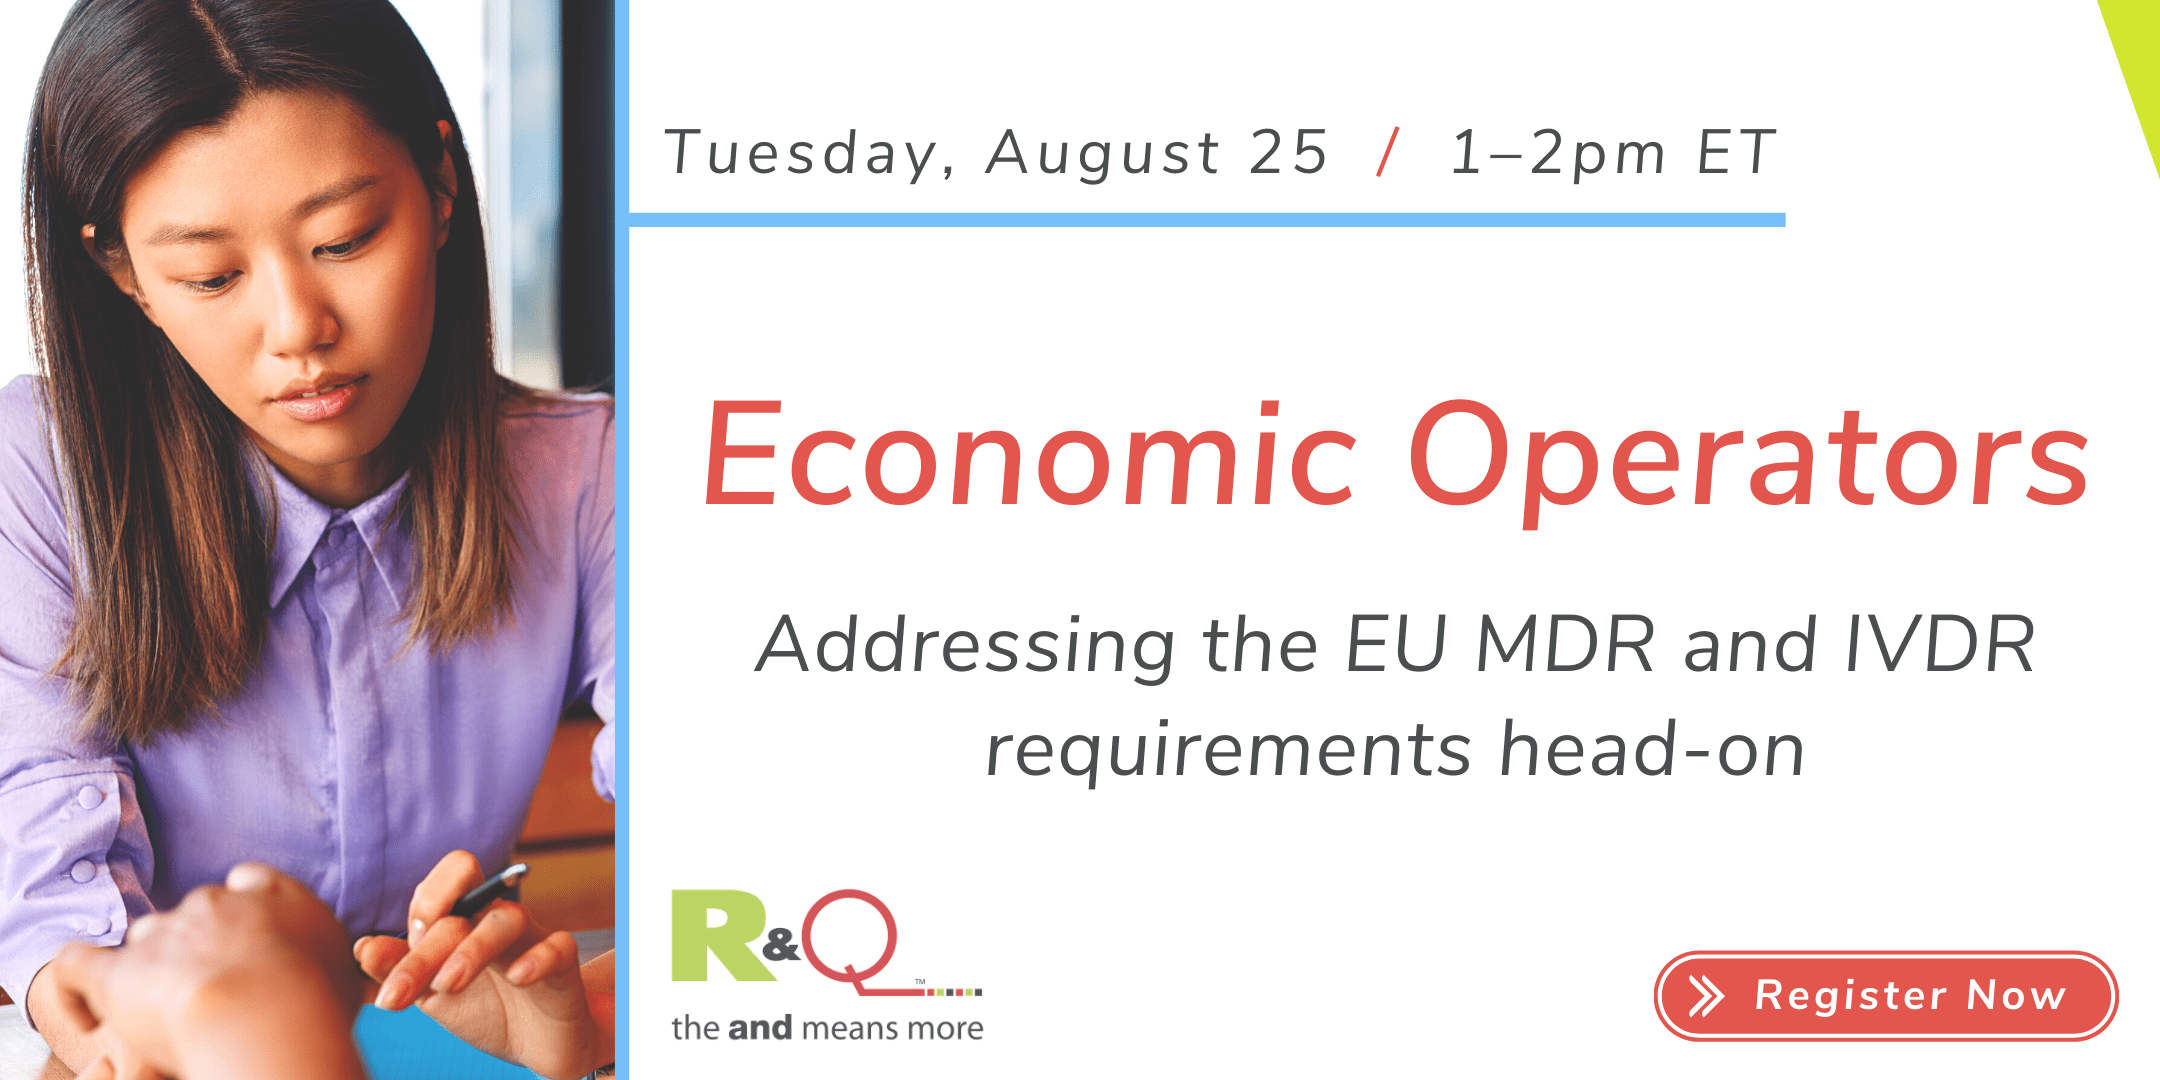 Economic Operators: EU MDR and IVDR Requirements